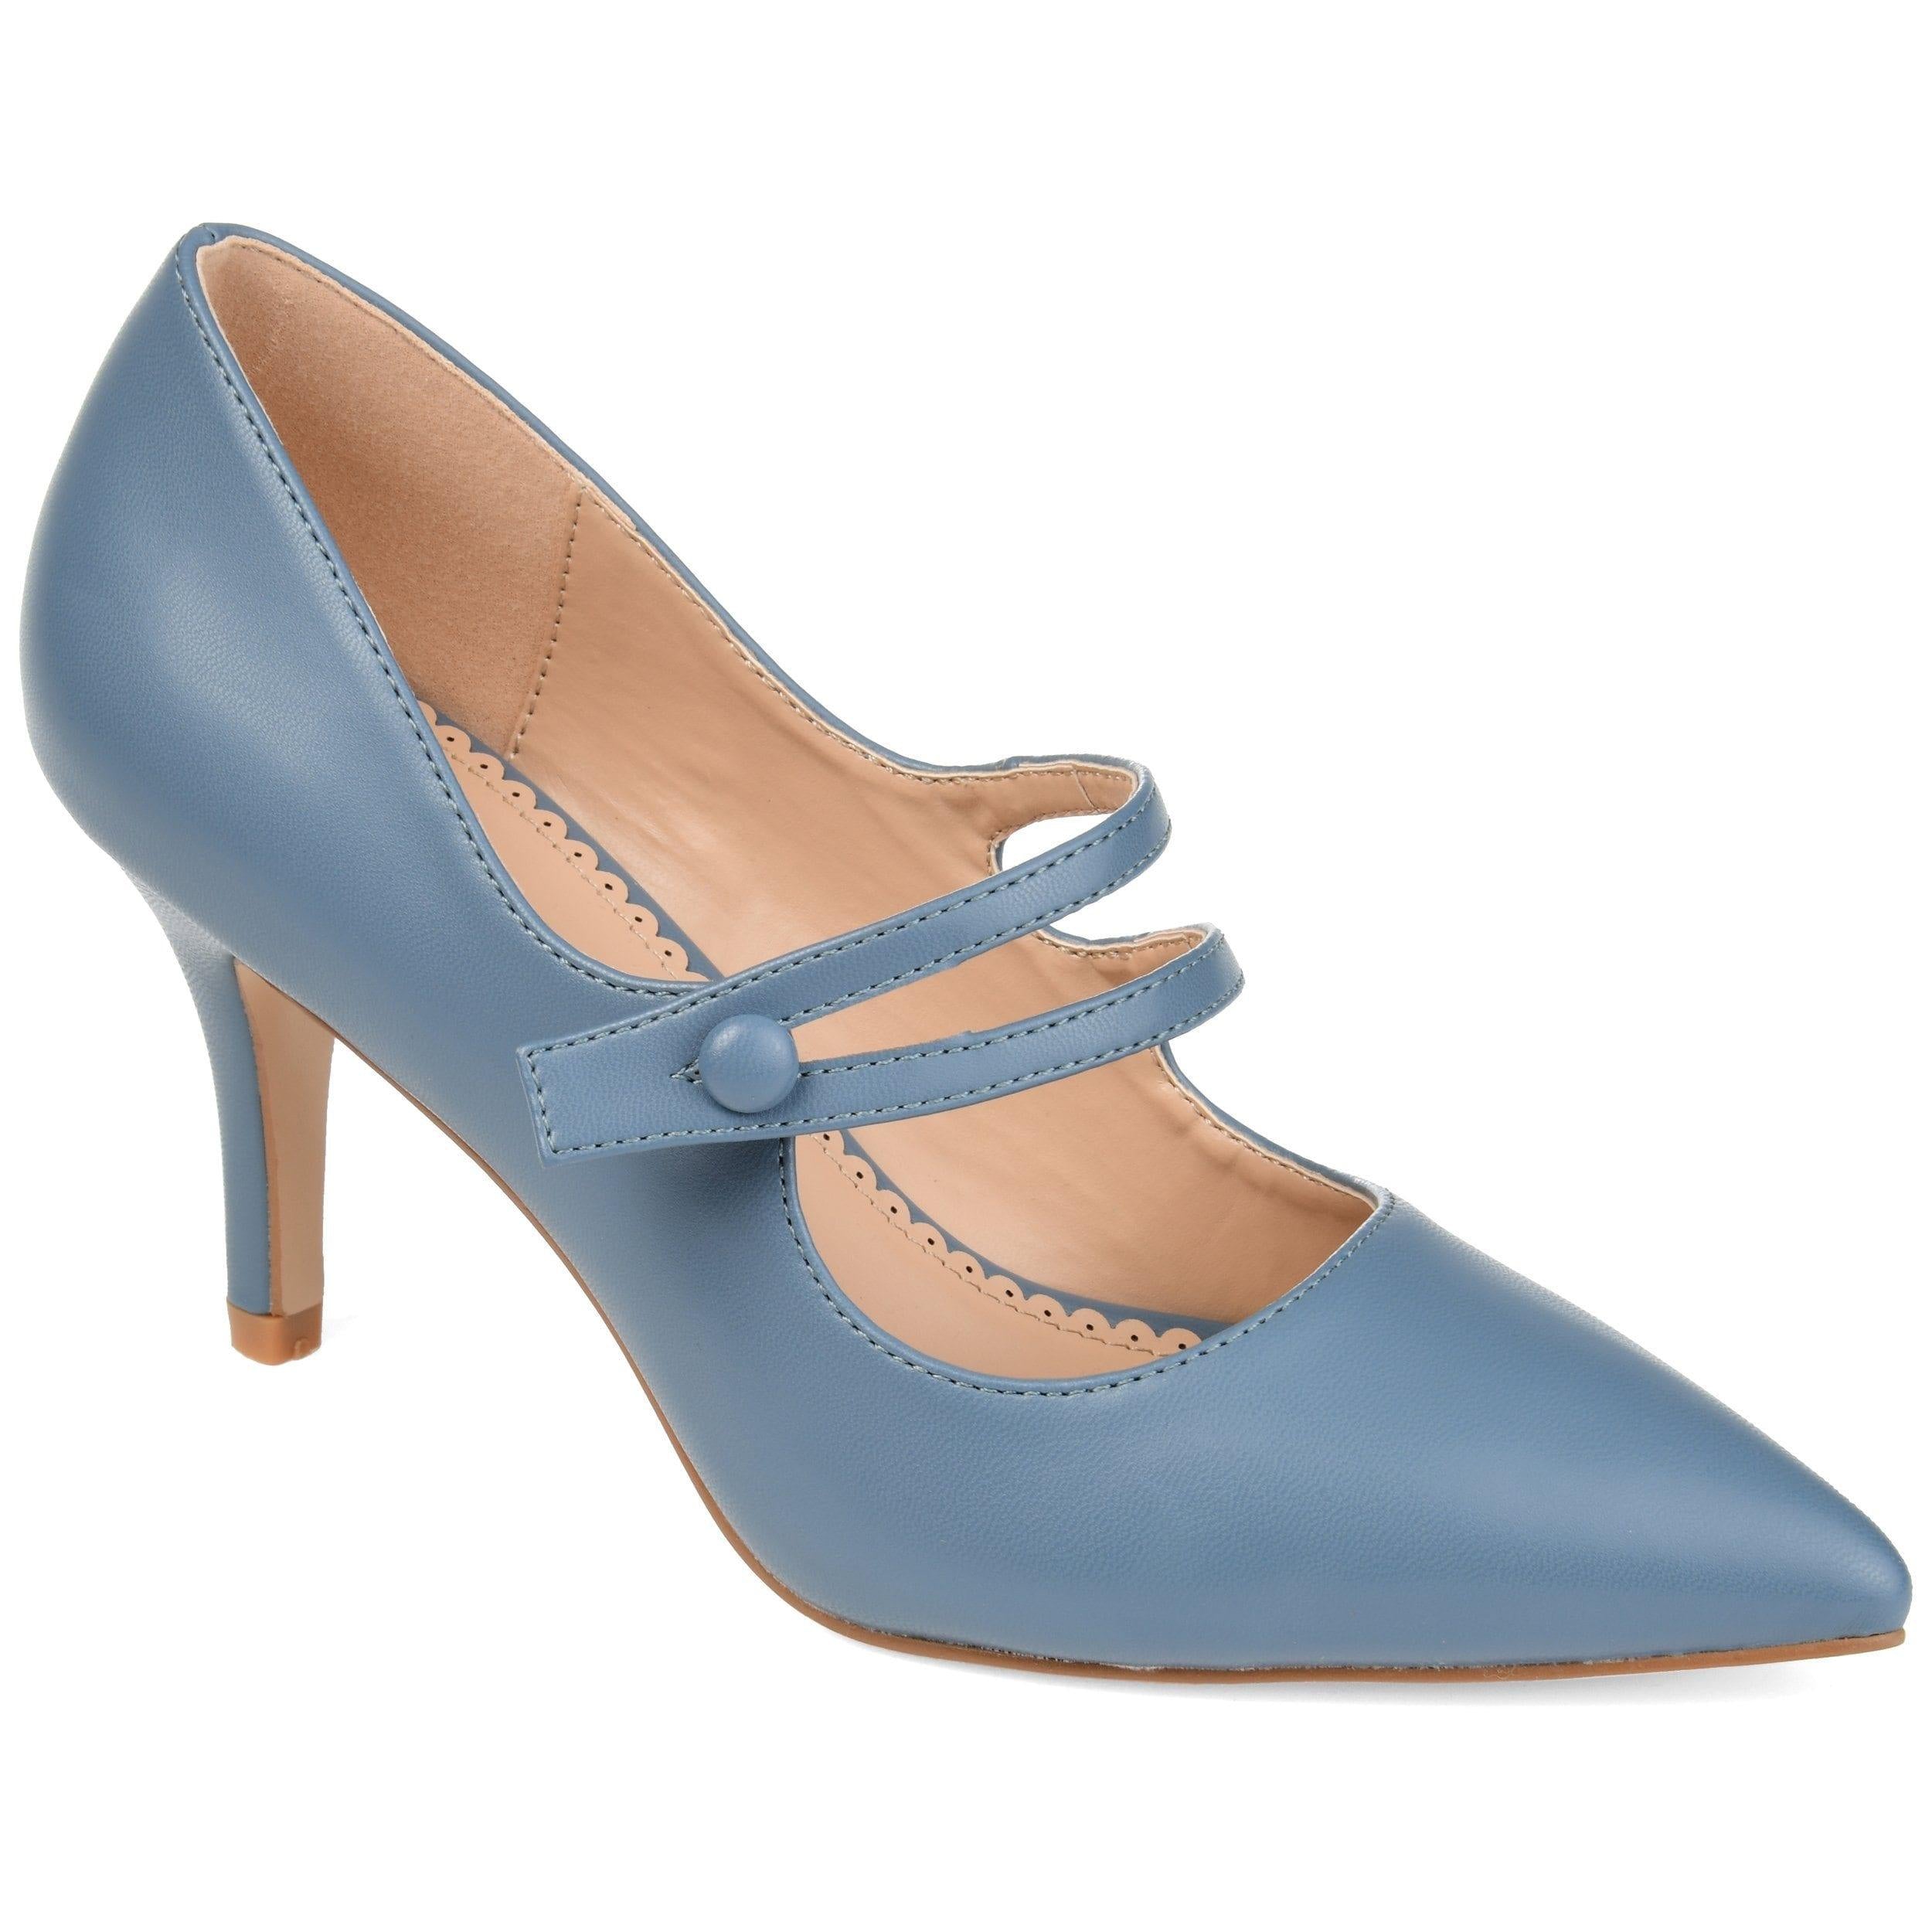 Sidney Pump | Women's Classic Heels | Journee Collection